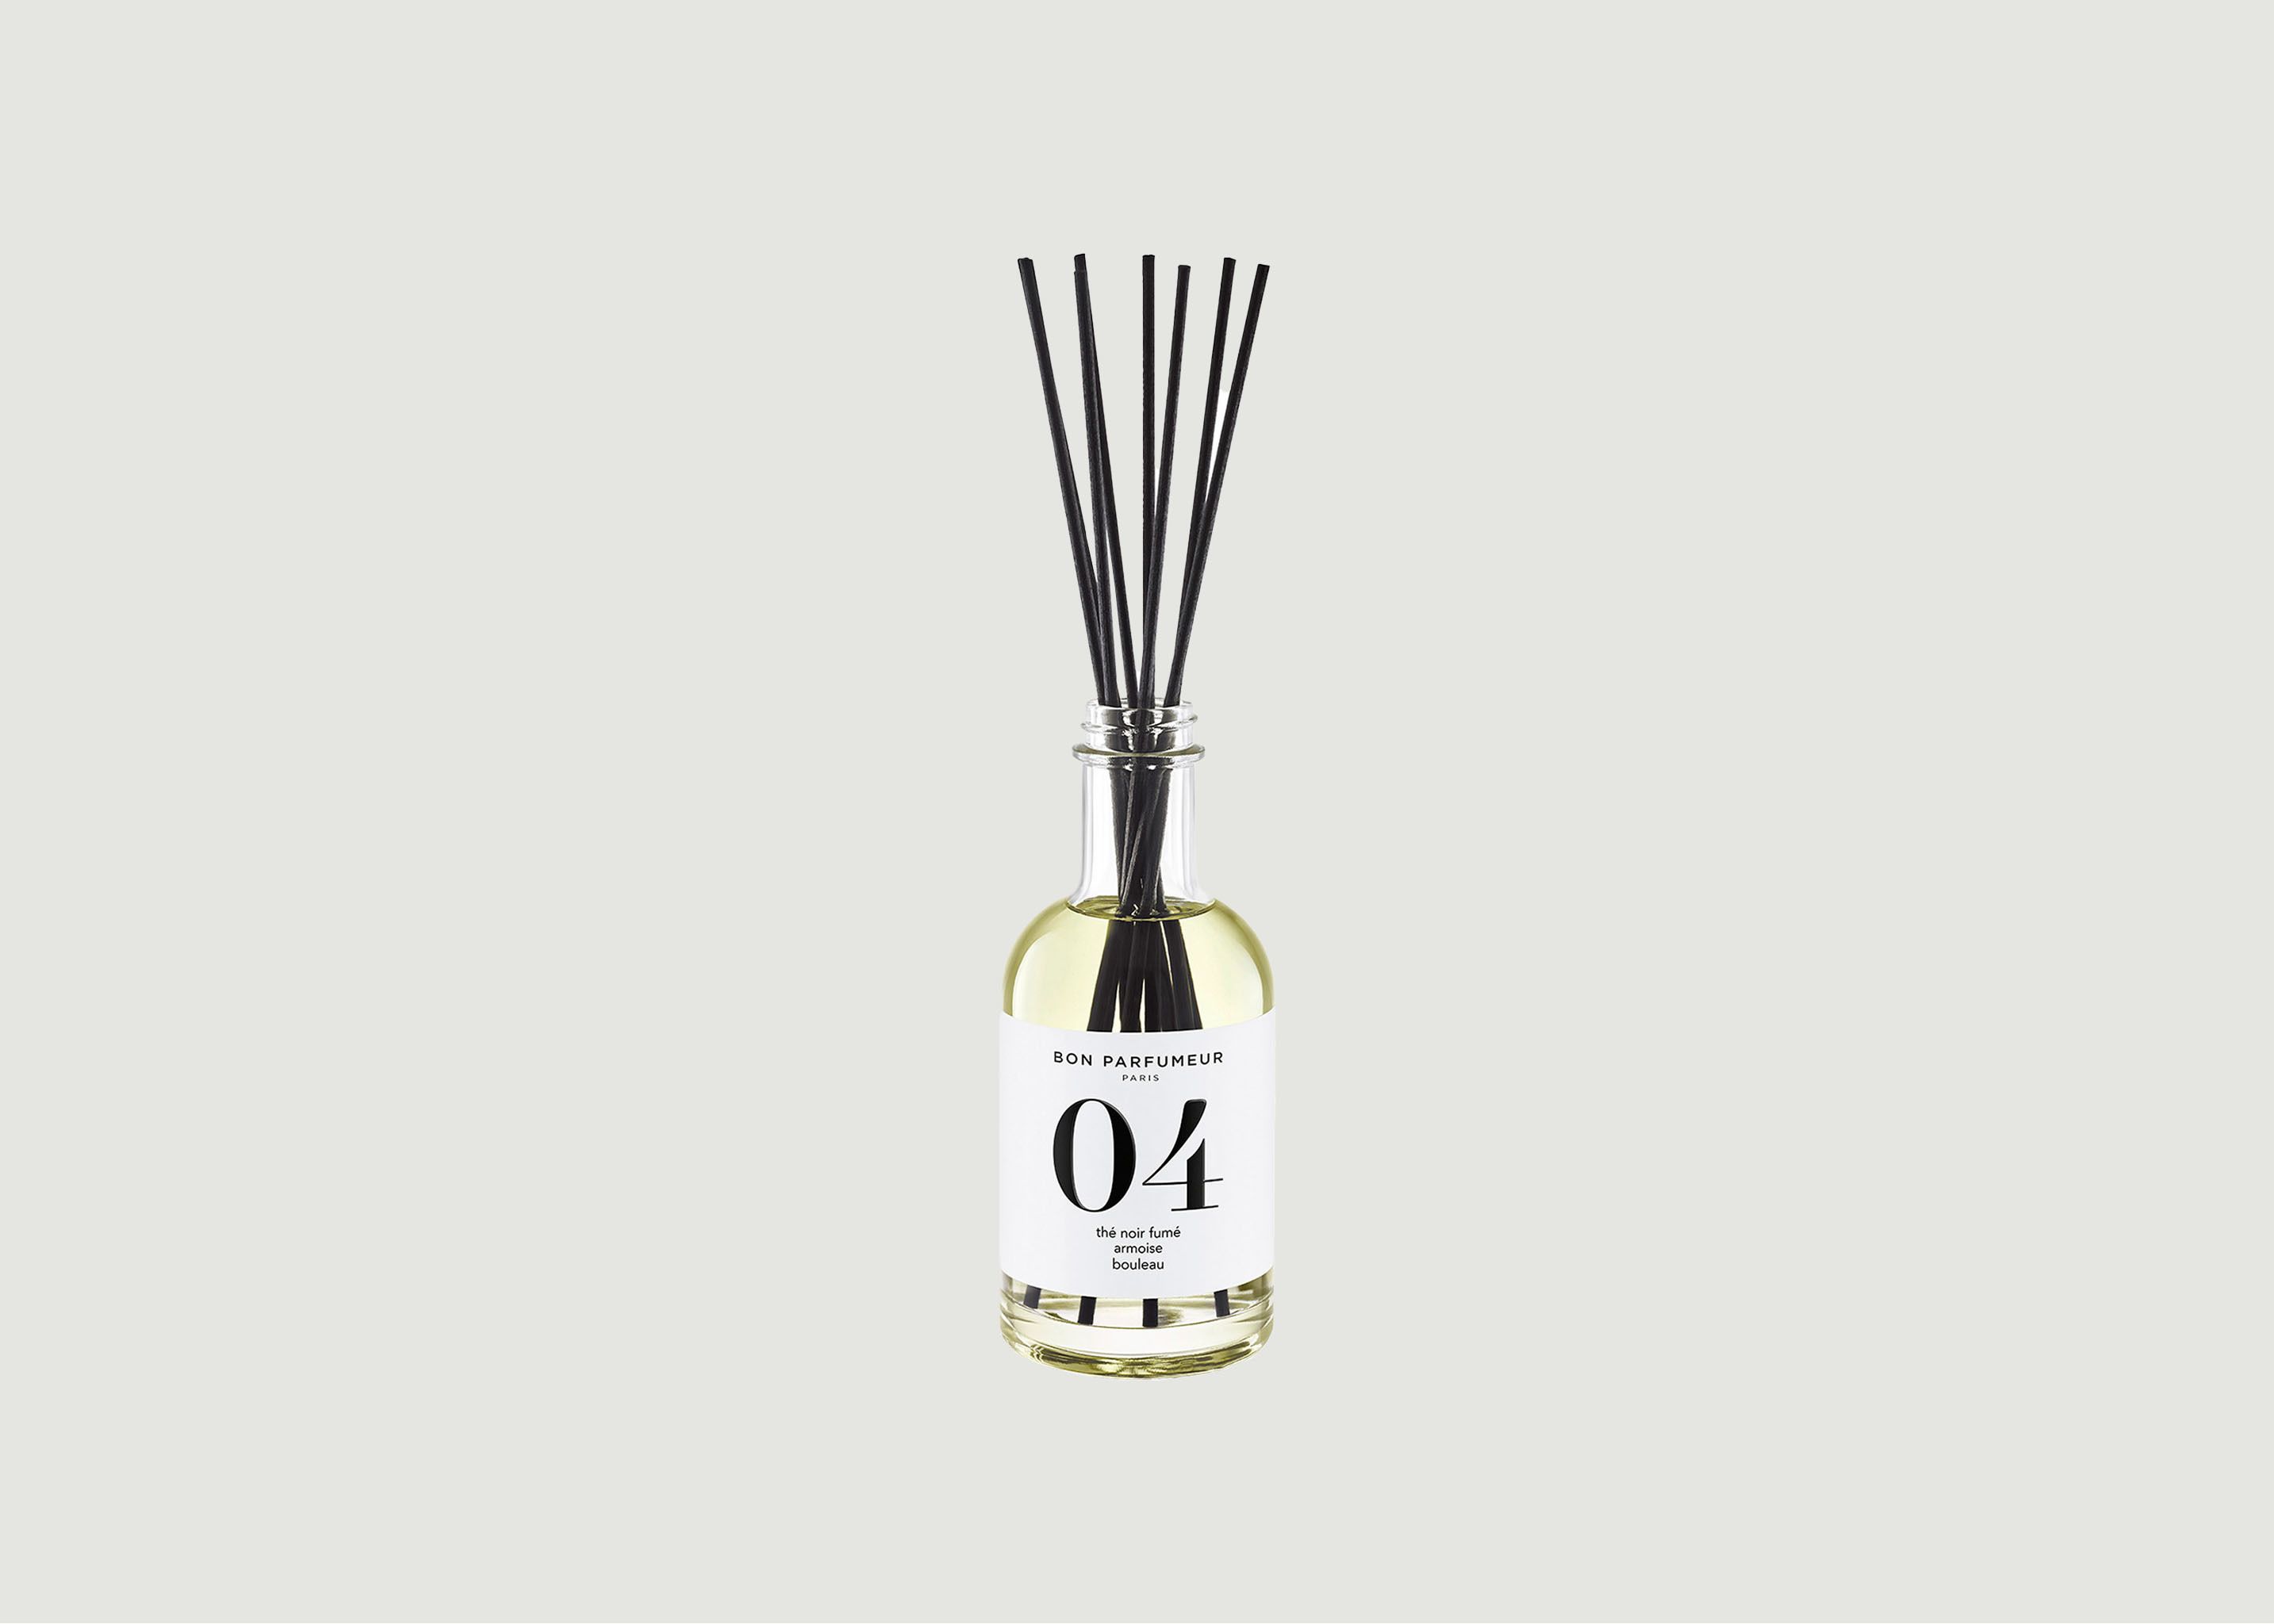 Diffuseur de Parfum d’Intérieur 04 : Thé Noir Fumé, Armoise, Bouleau - Bon Parfumeur